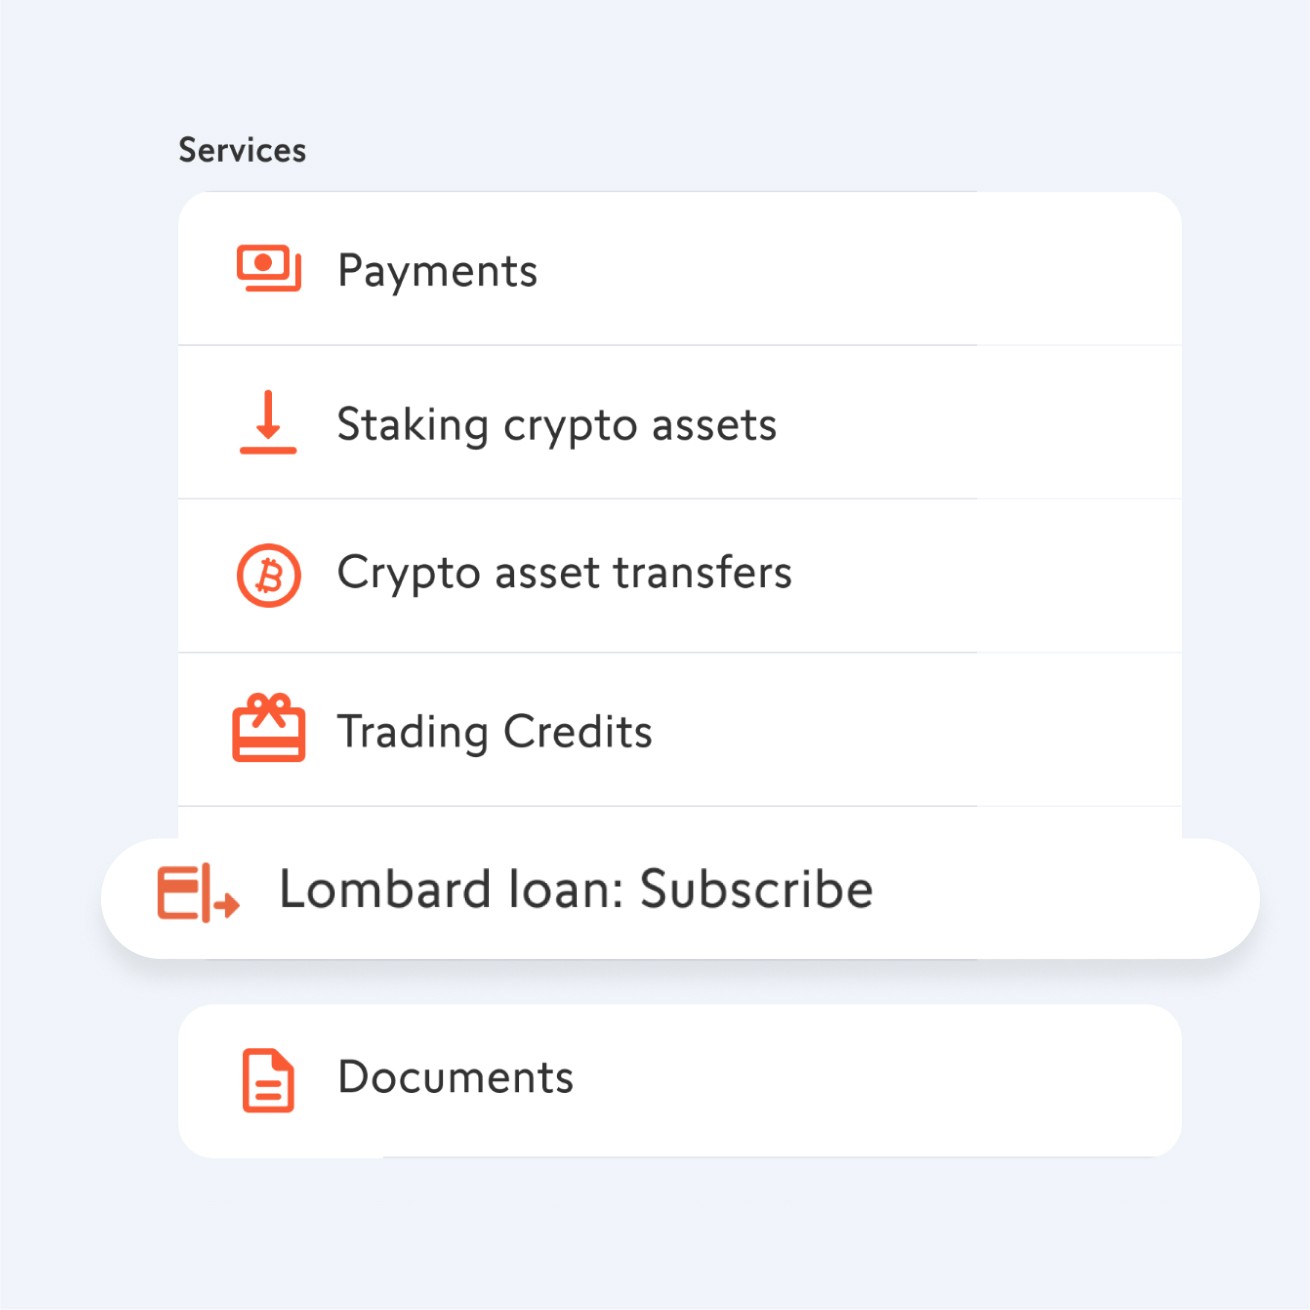 Lombard loan in the swissquote app